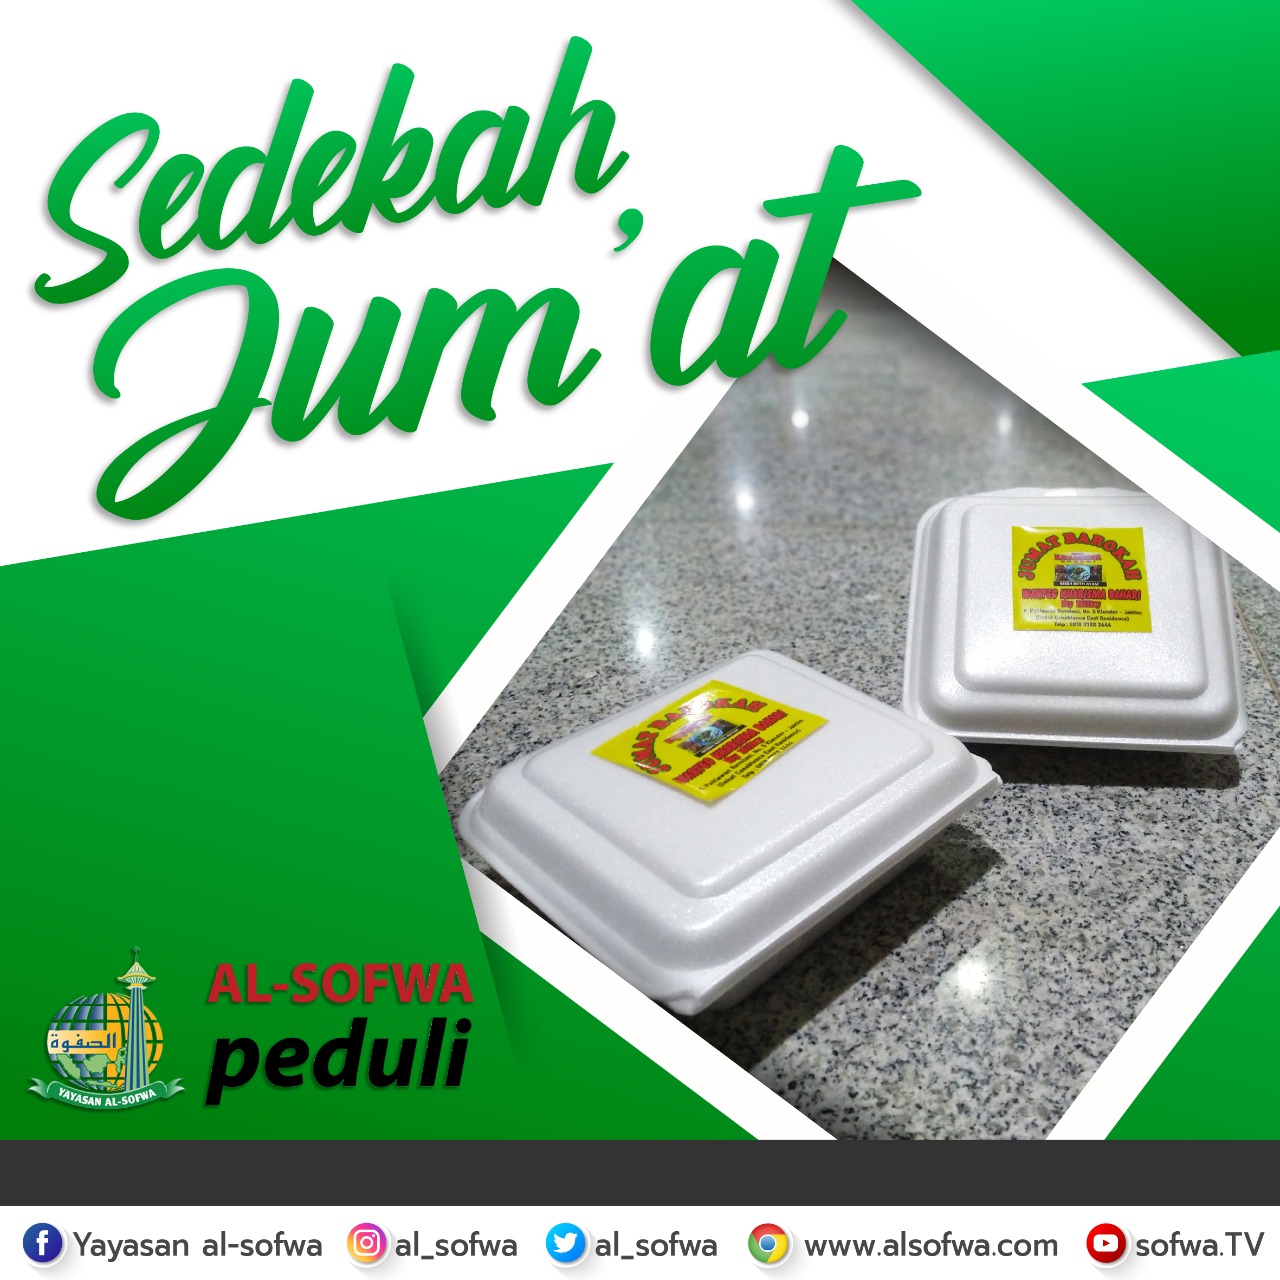 You are currently viewing Penyaluran Berbagi Sedekah Jum’at 100 Nasi Box